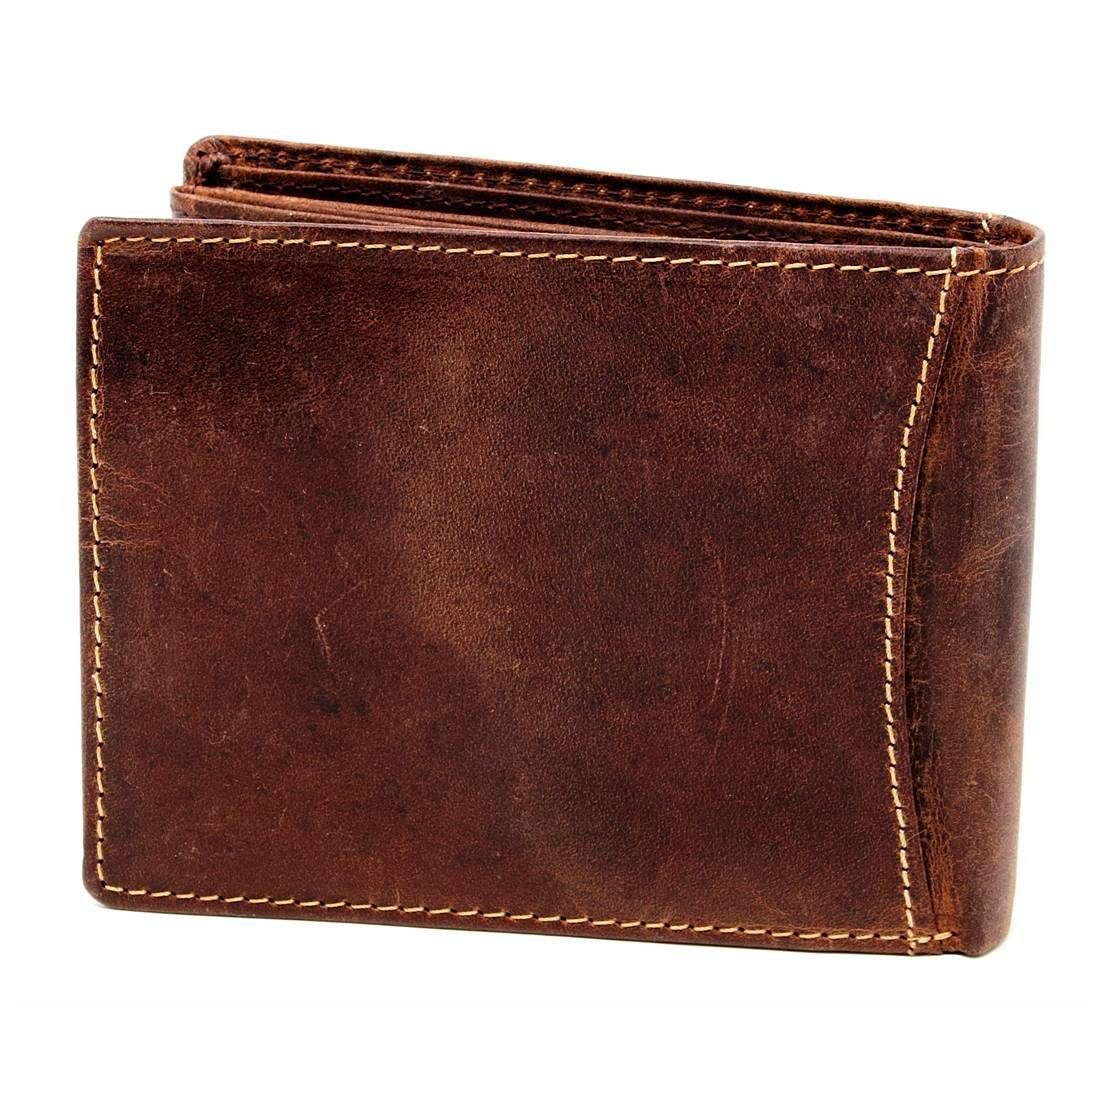 Brieftasche Portemonnaie, Schutz Leder SHG mit Geldbörse Lederbörse Börse Münzfach Herren Büffelleder Männerbörse RFID